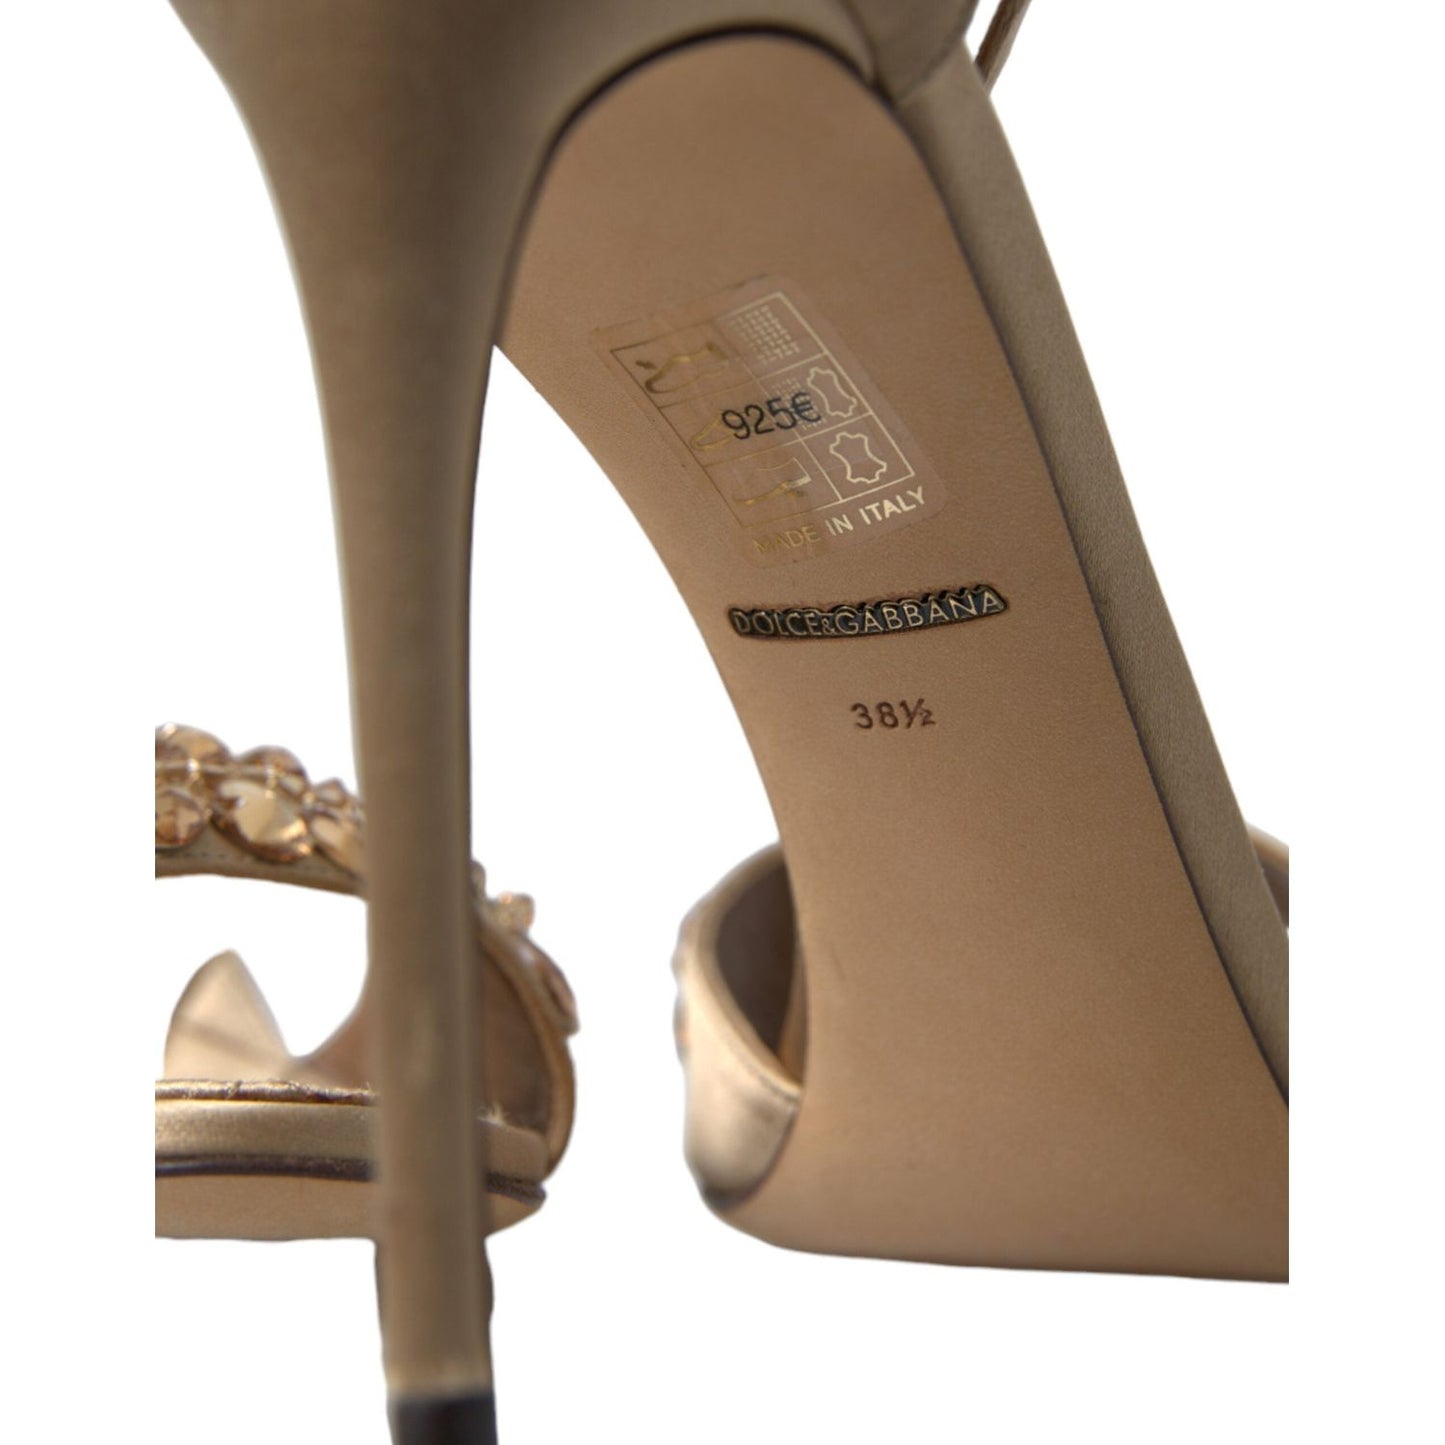 Dolce & Gabbana Crystal Embellished Heel Sandals gold-satin-ankle-strap-crystal-sandals-shoes 465A9648-bg-scaled-261491fb-1cb.jpg